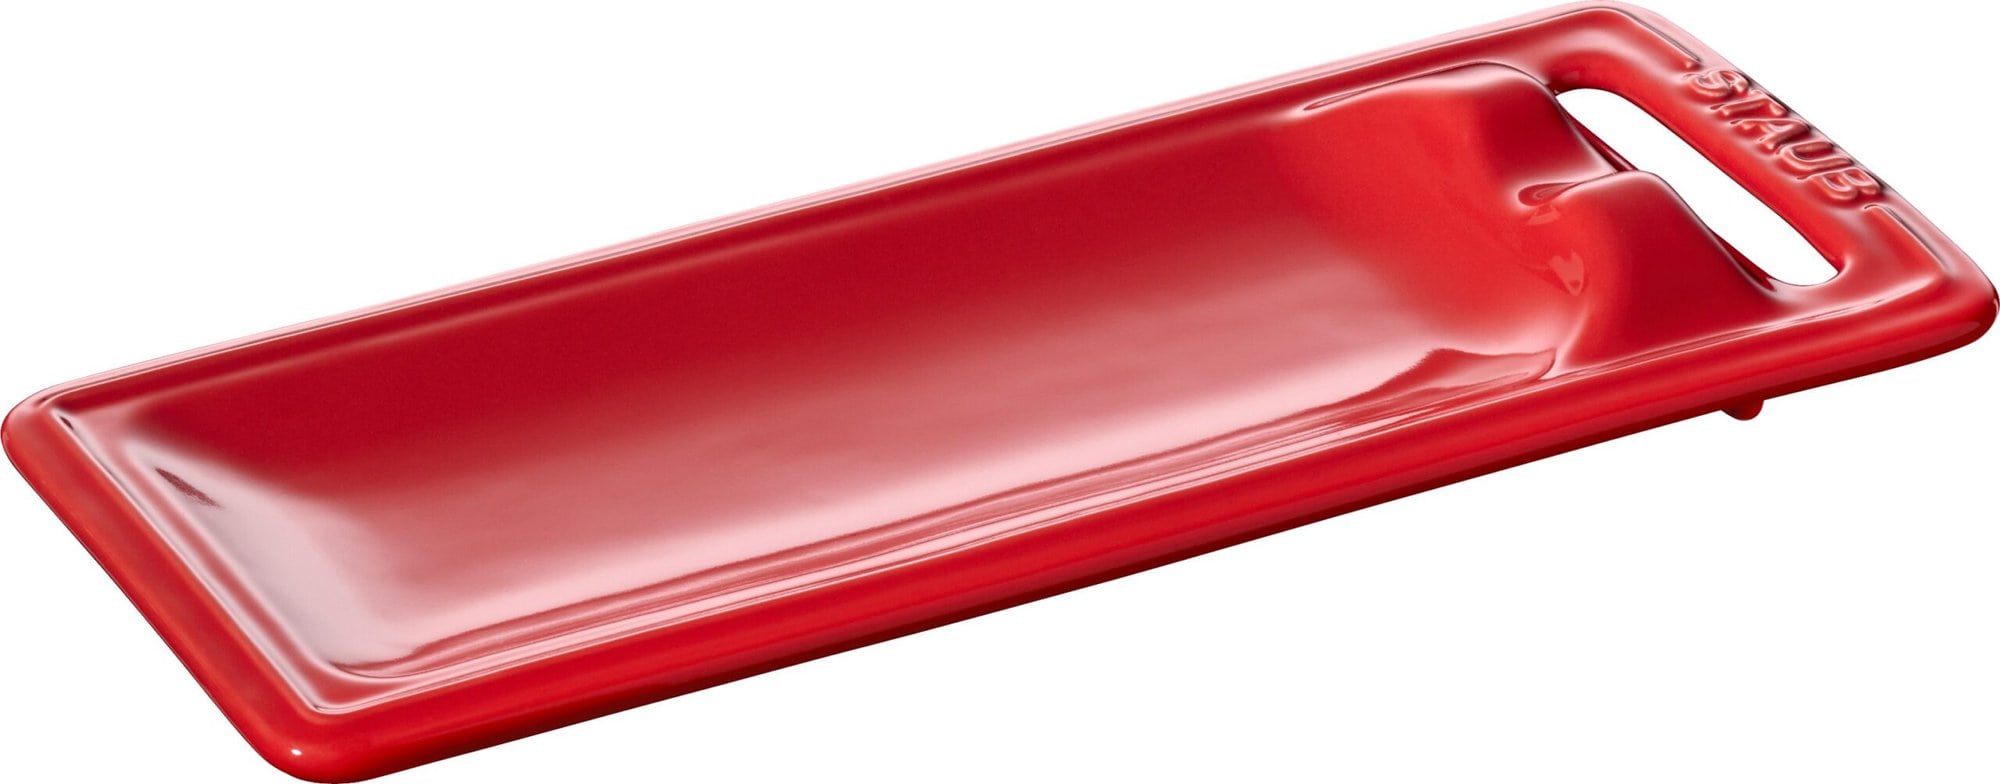 Podstawka pod łyżkę Staub : Kolor - Czerwony